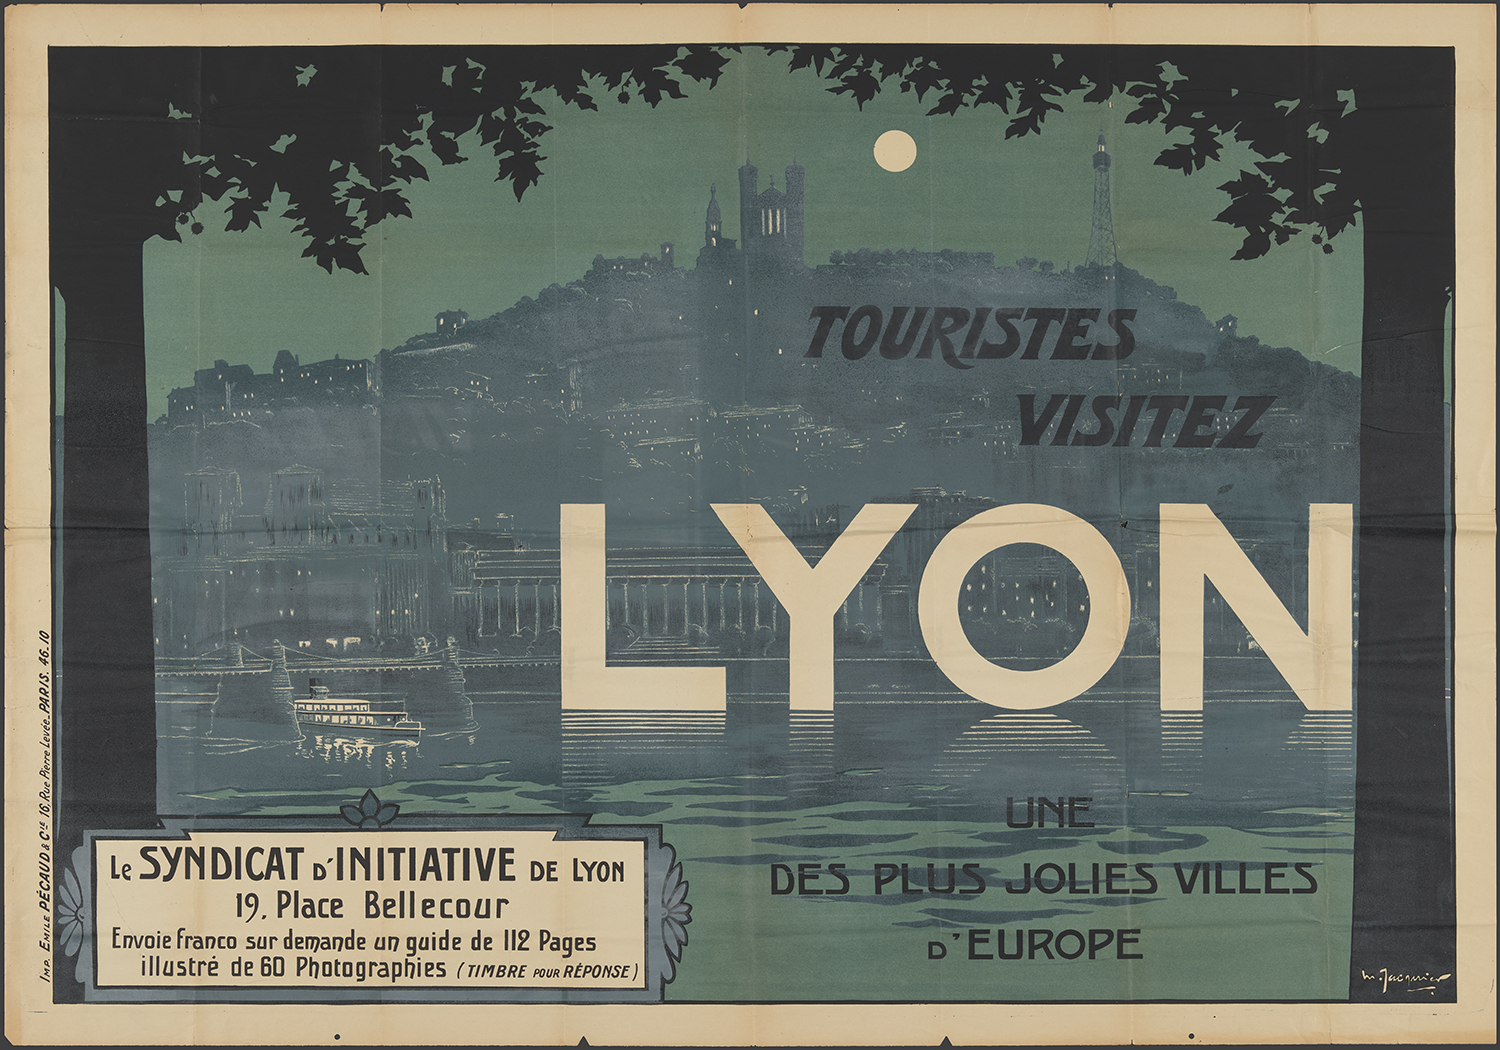 Affiche du syndicat d'initiative de Lyon "Touristes, visitez Lyon" vers 1920